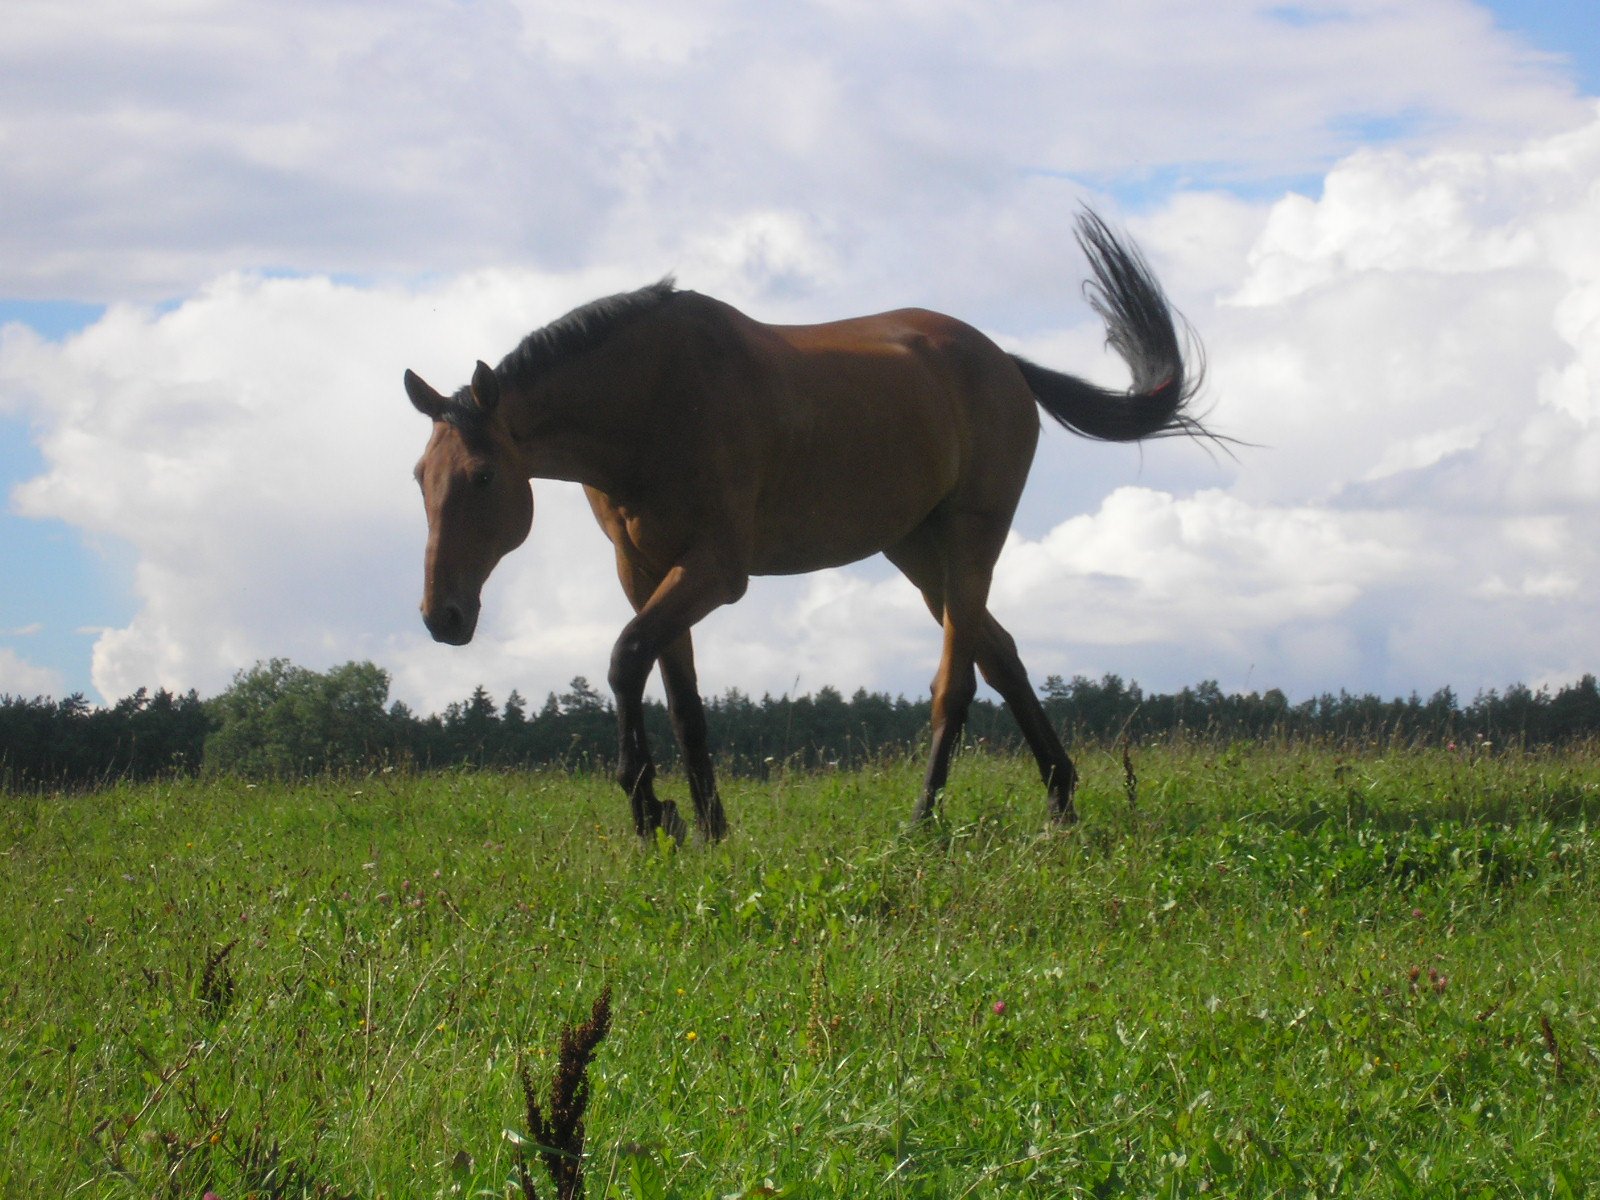 a horse is running through the grass field